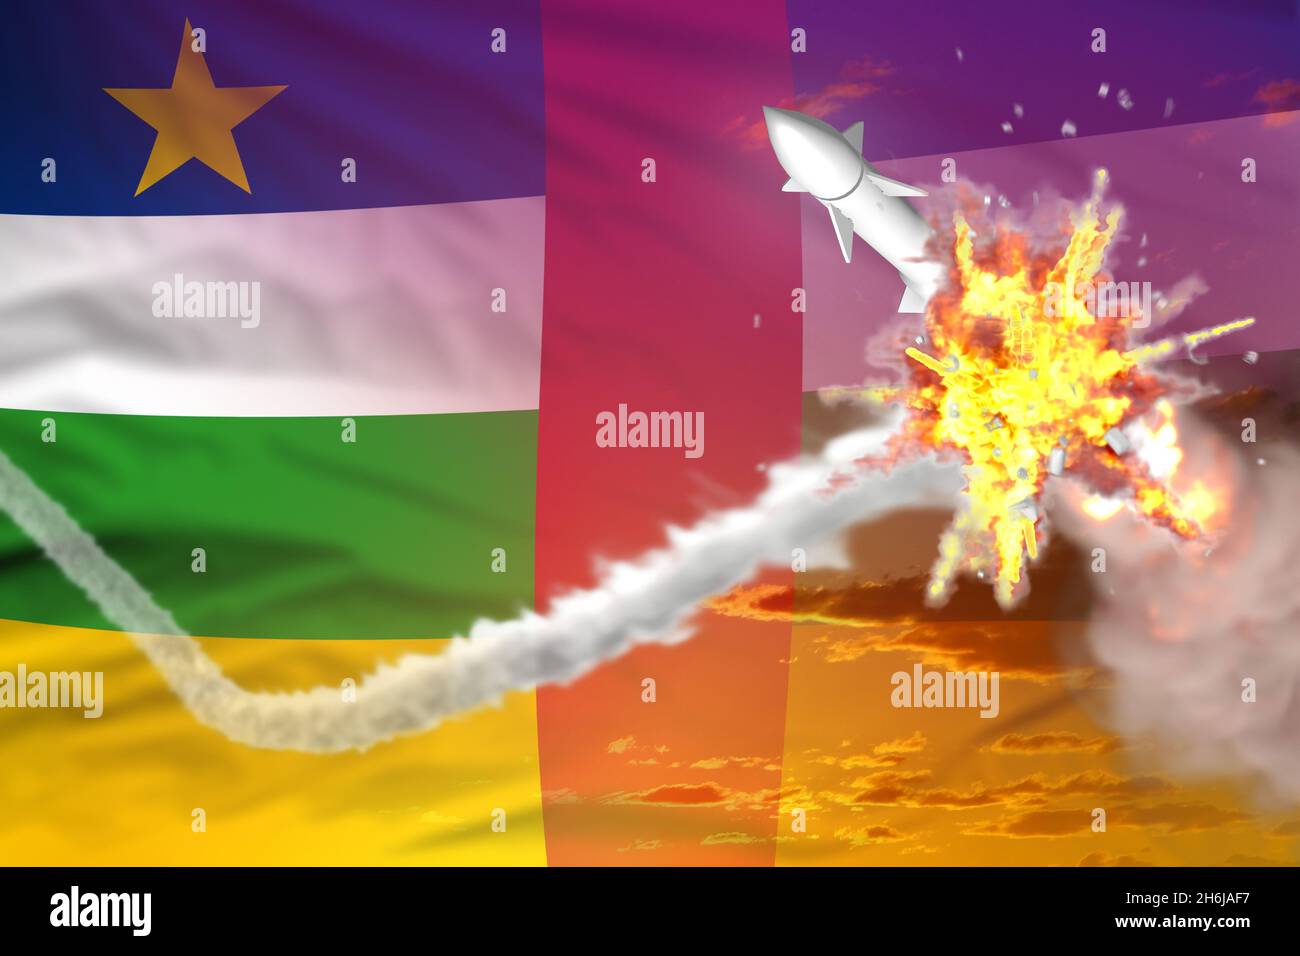 République centrafricaine interceptée missile supersonique, antiroquette moderne détruit le concept de missile ennemi, illustration militaire industrielle 3D avec fl Banque D'Images